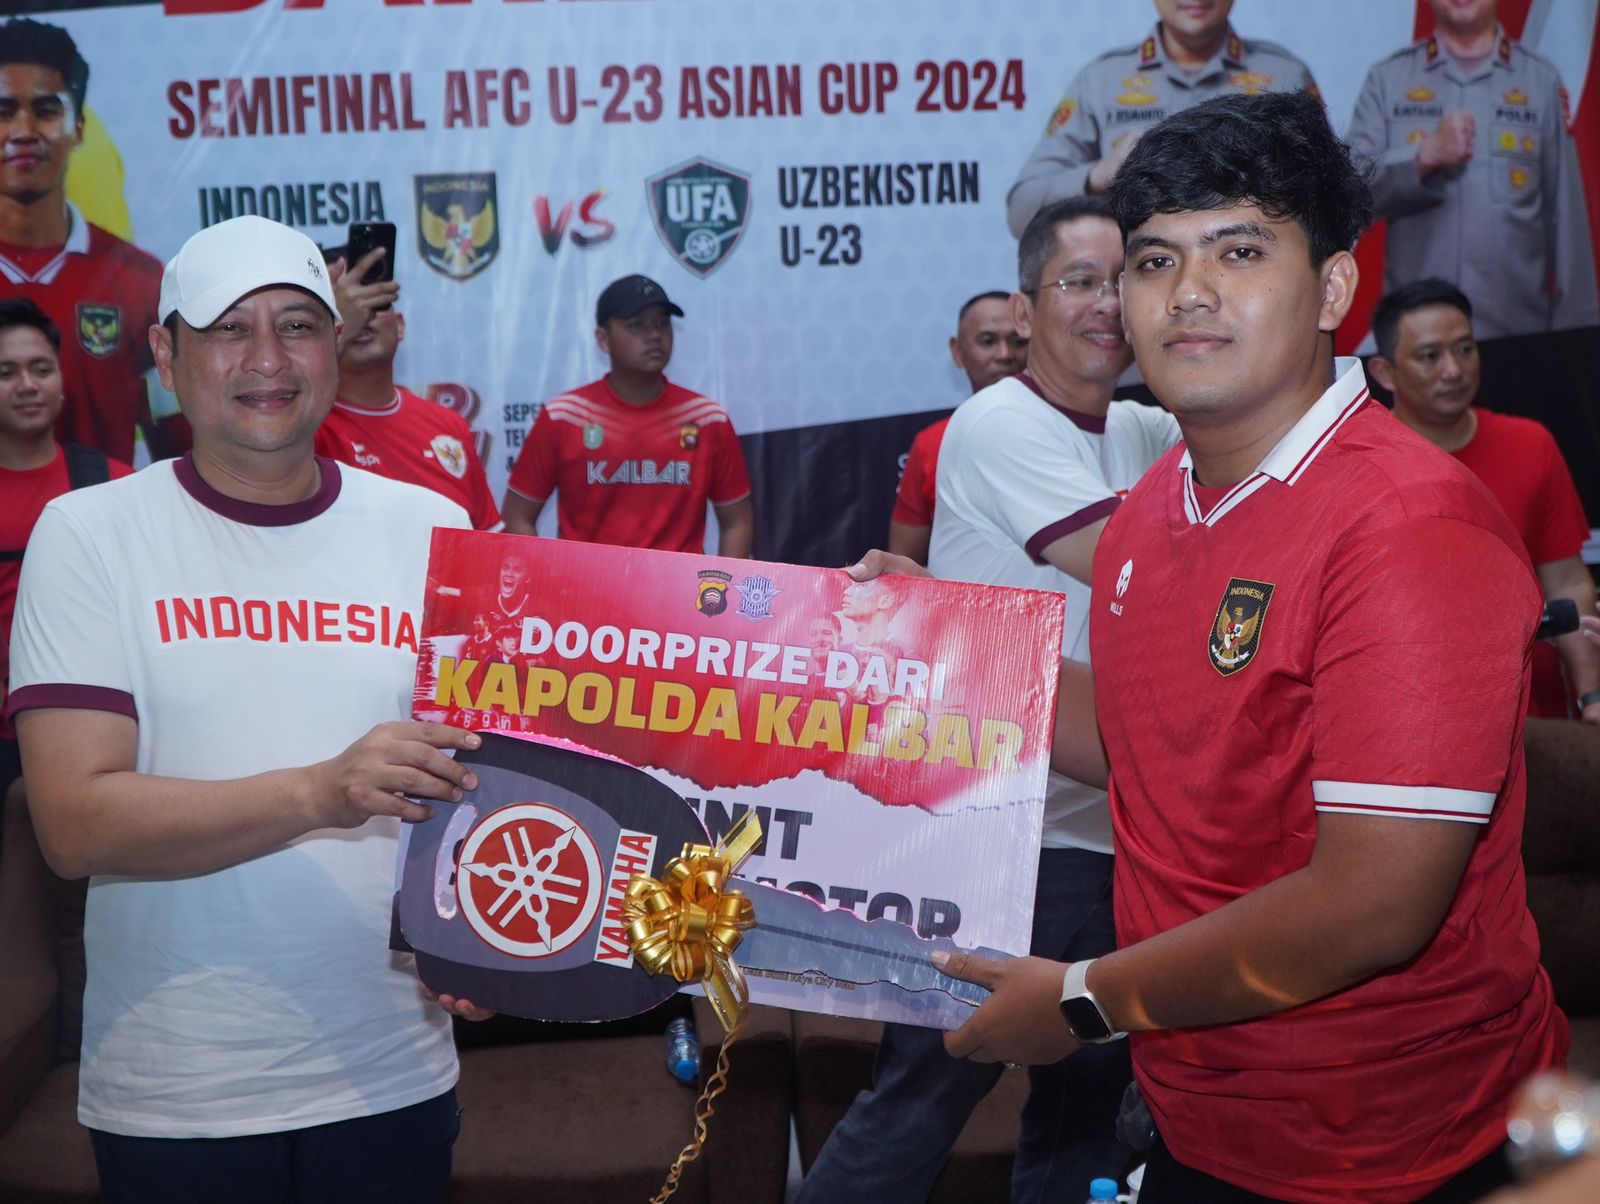 Tingkatkan Rasa Kebersamaan Dengan Masyarakat, Polda Kalbar Gelar Nobar Babak Semifinal Timnas Indonesia Vs Uzbekistan